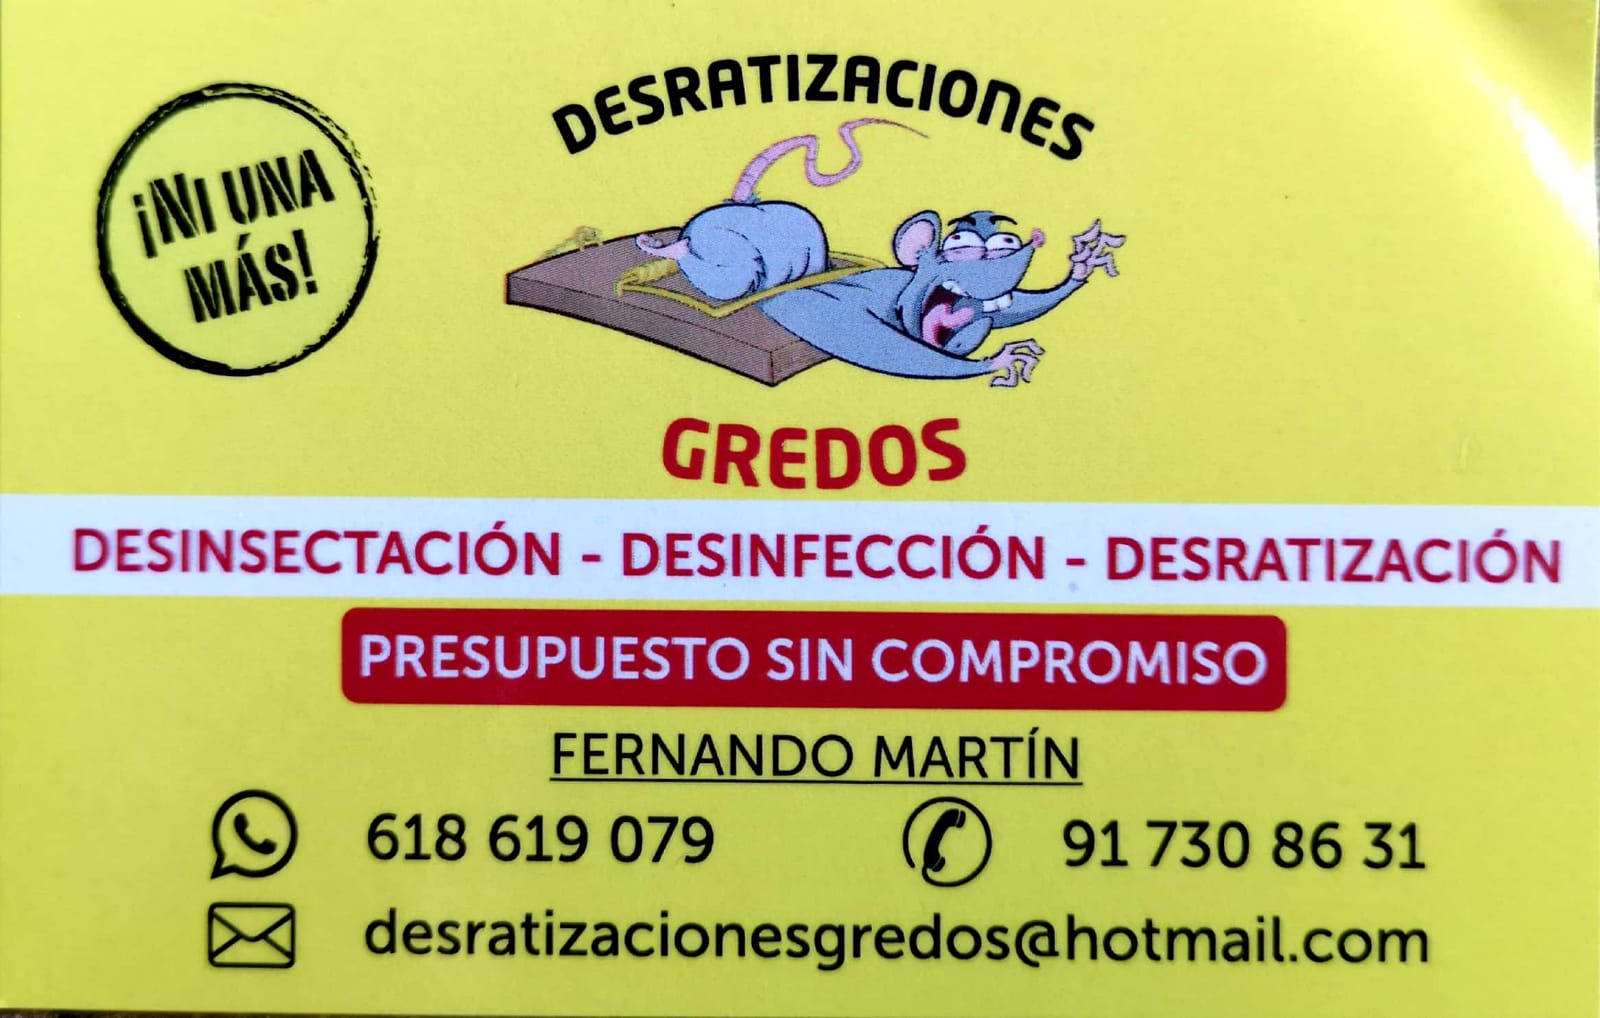 Desratizaciones Gredos, control de plagas mostoles, desratizacion mostoles